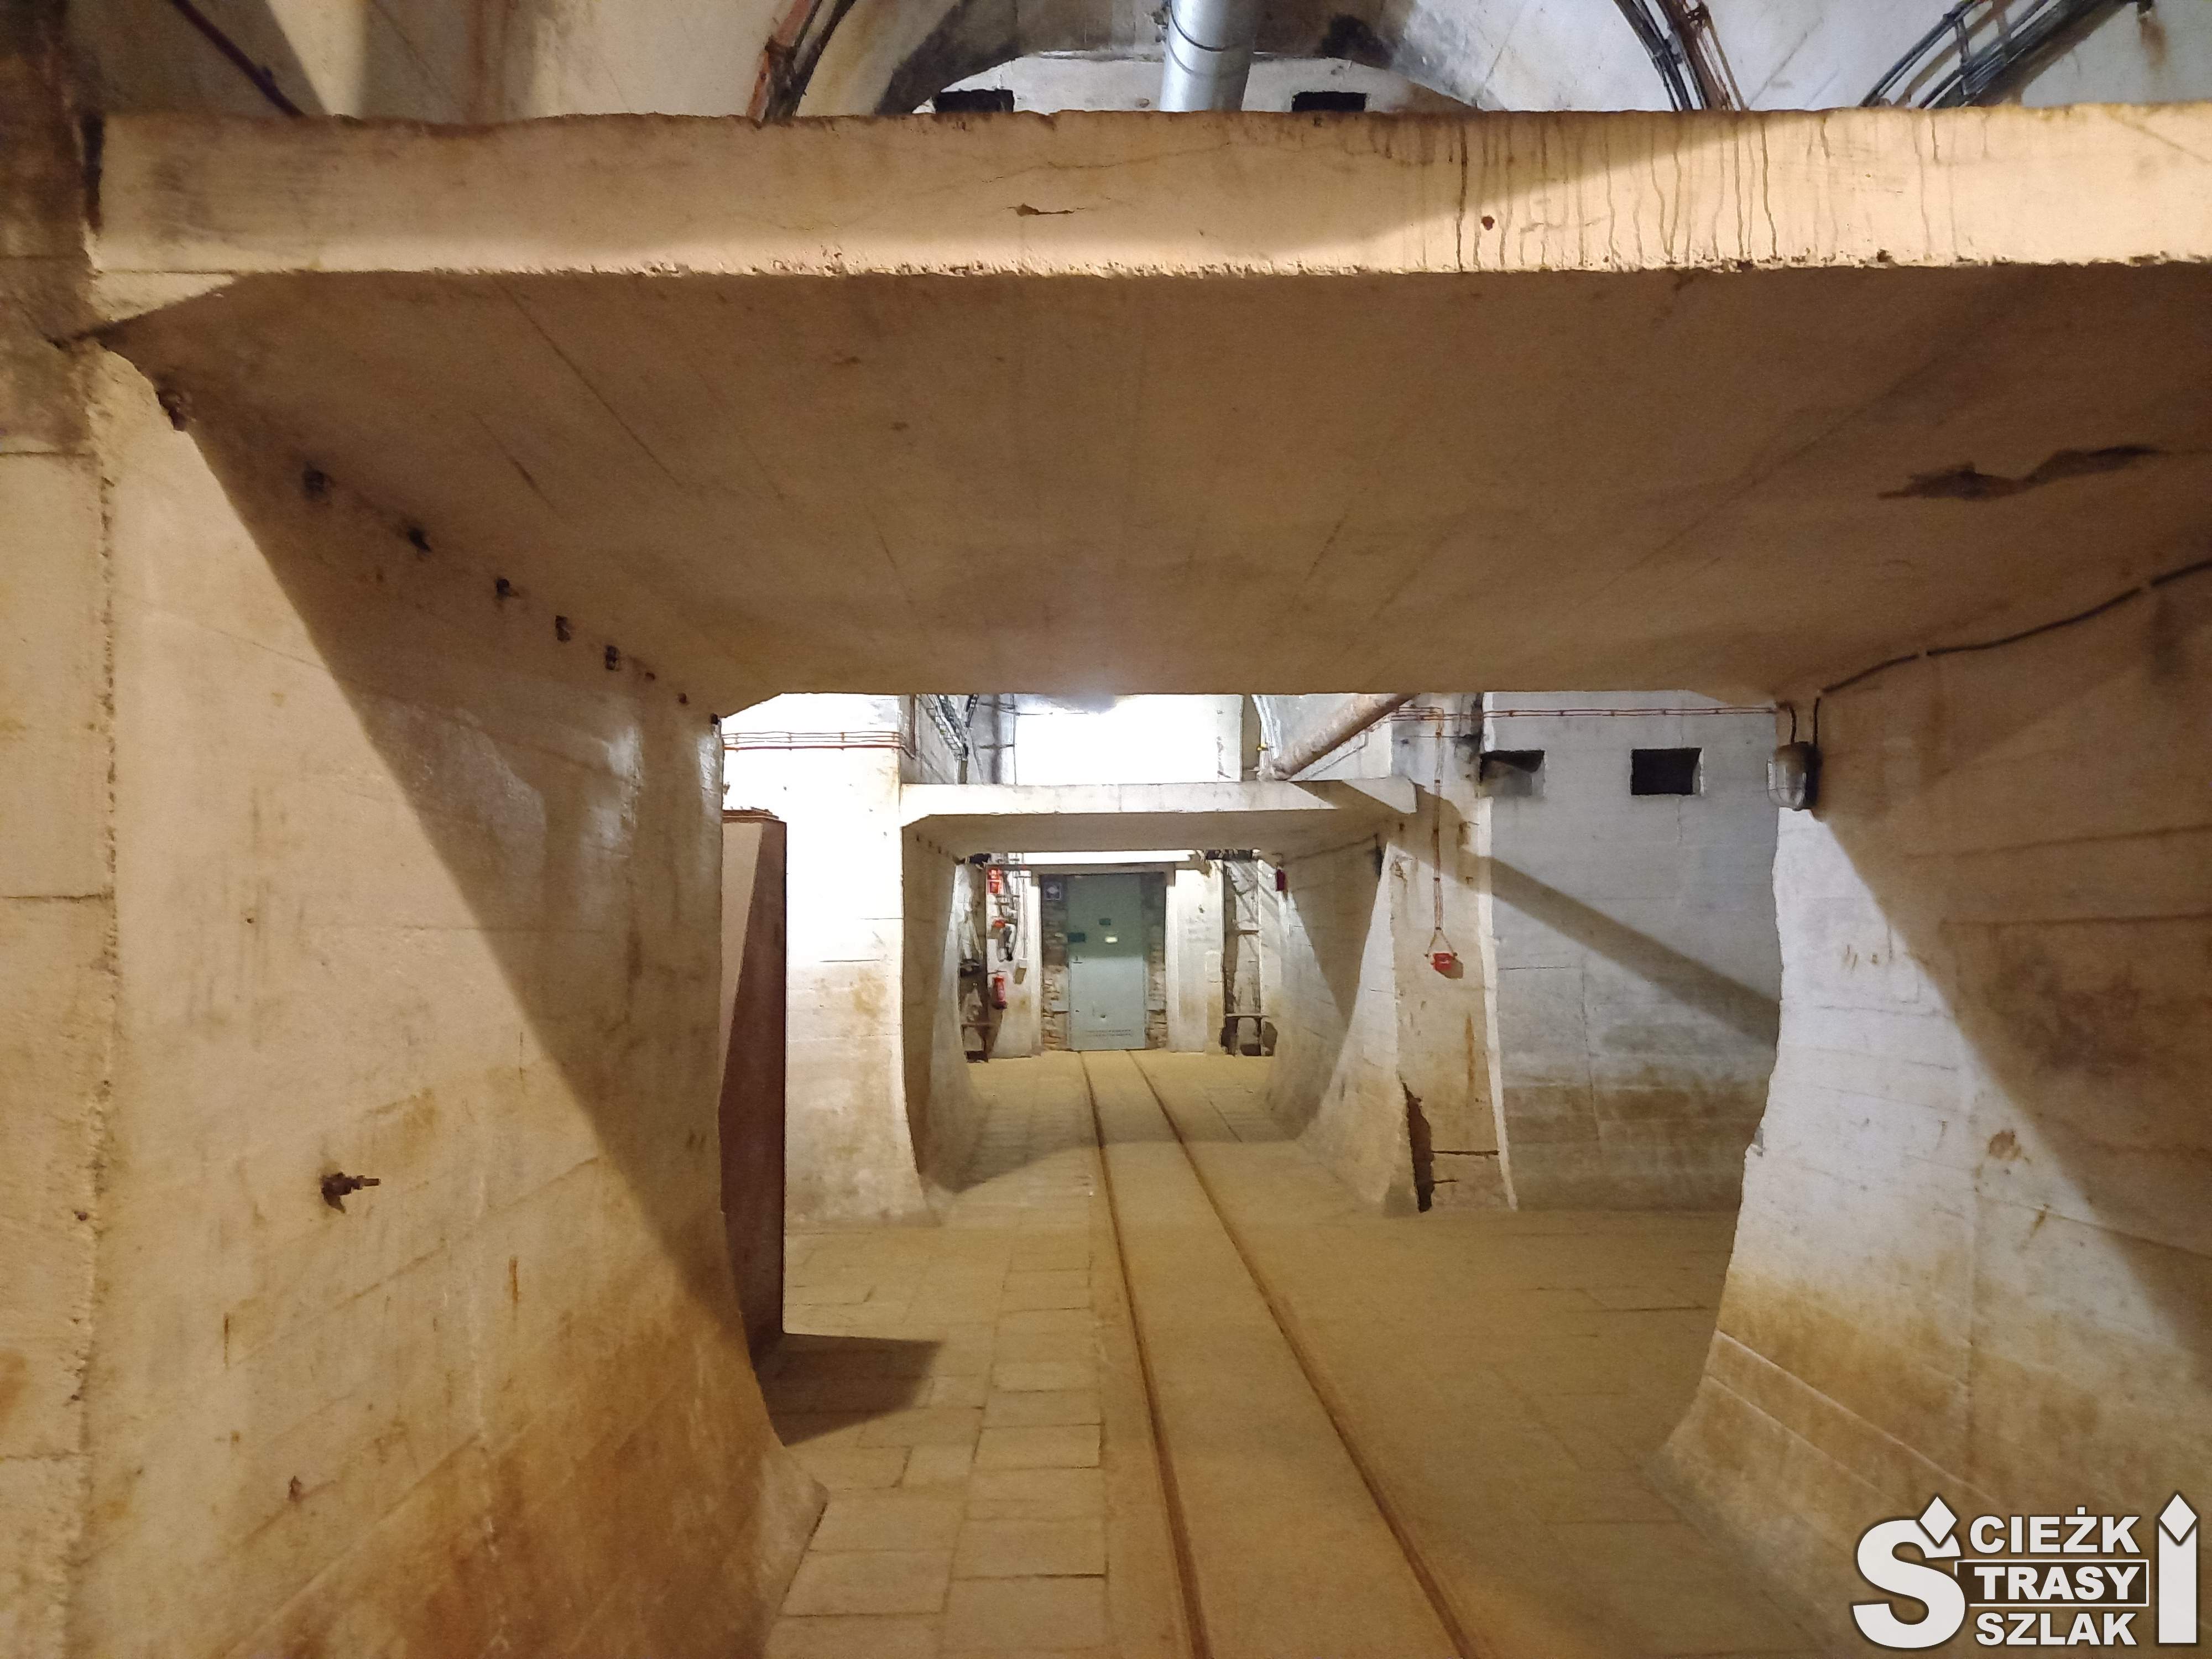 Betonowe wnętrze wysokiego bunkra hitlerowskiego z torami dla kolei wąskotorowej w Międzyrzeczu